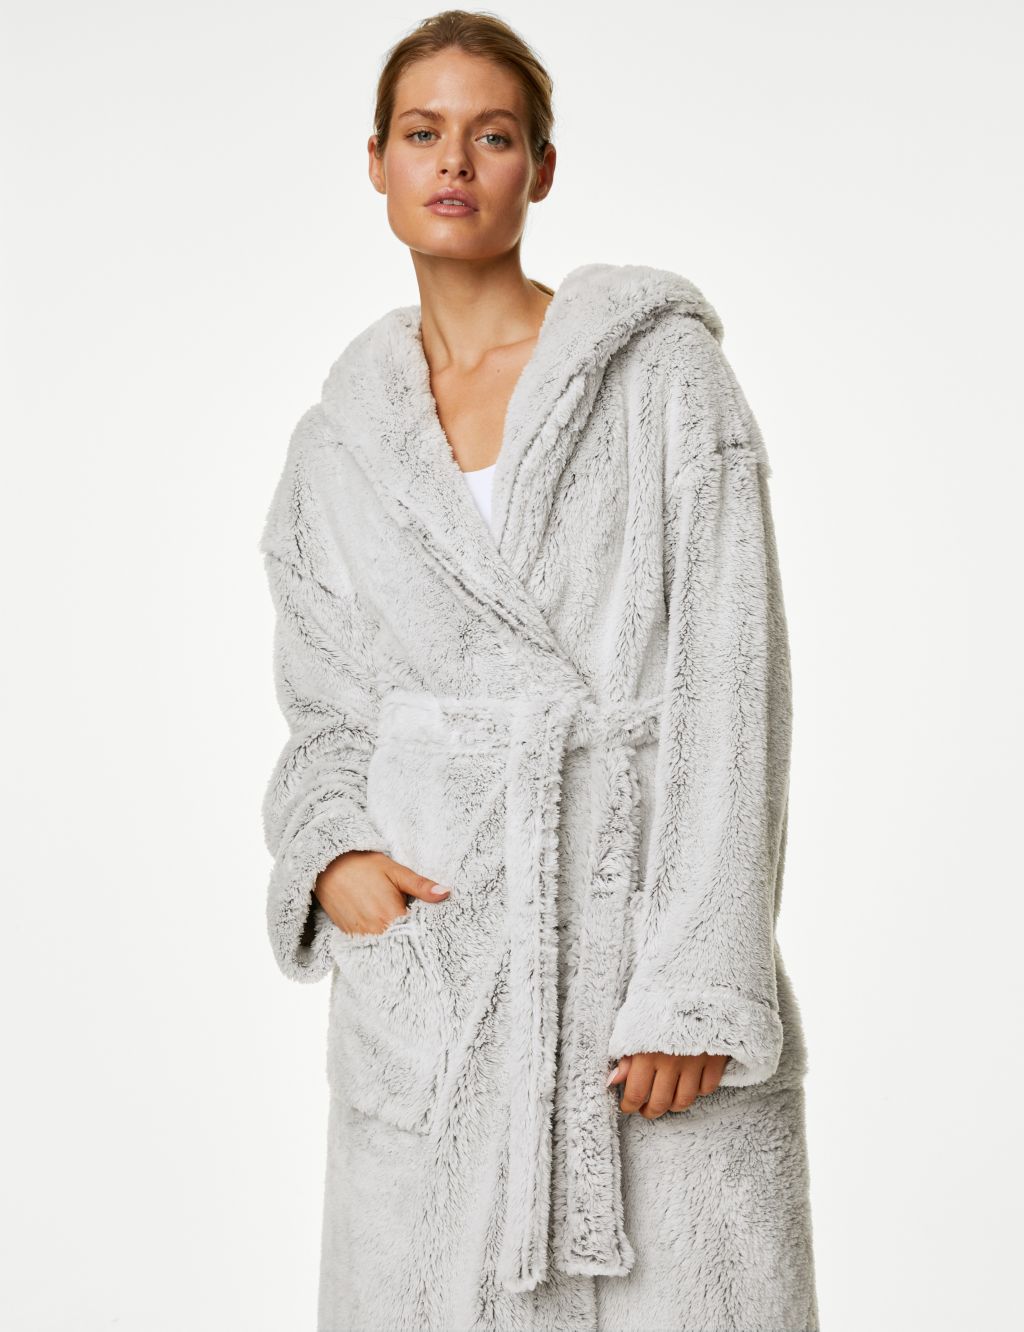 Sherpa Fleece Bathrobe Women Soft Dressing Gown Hooded Fluffy Towling Bath  Robe_y S